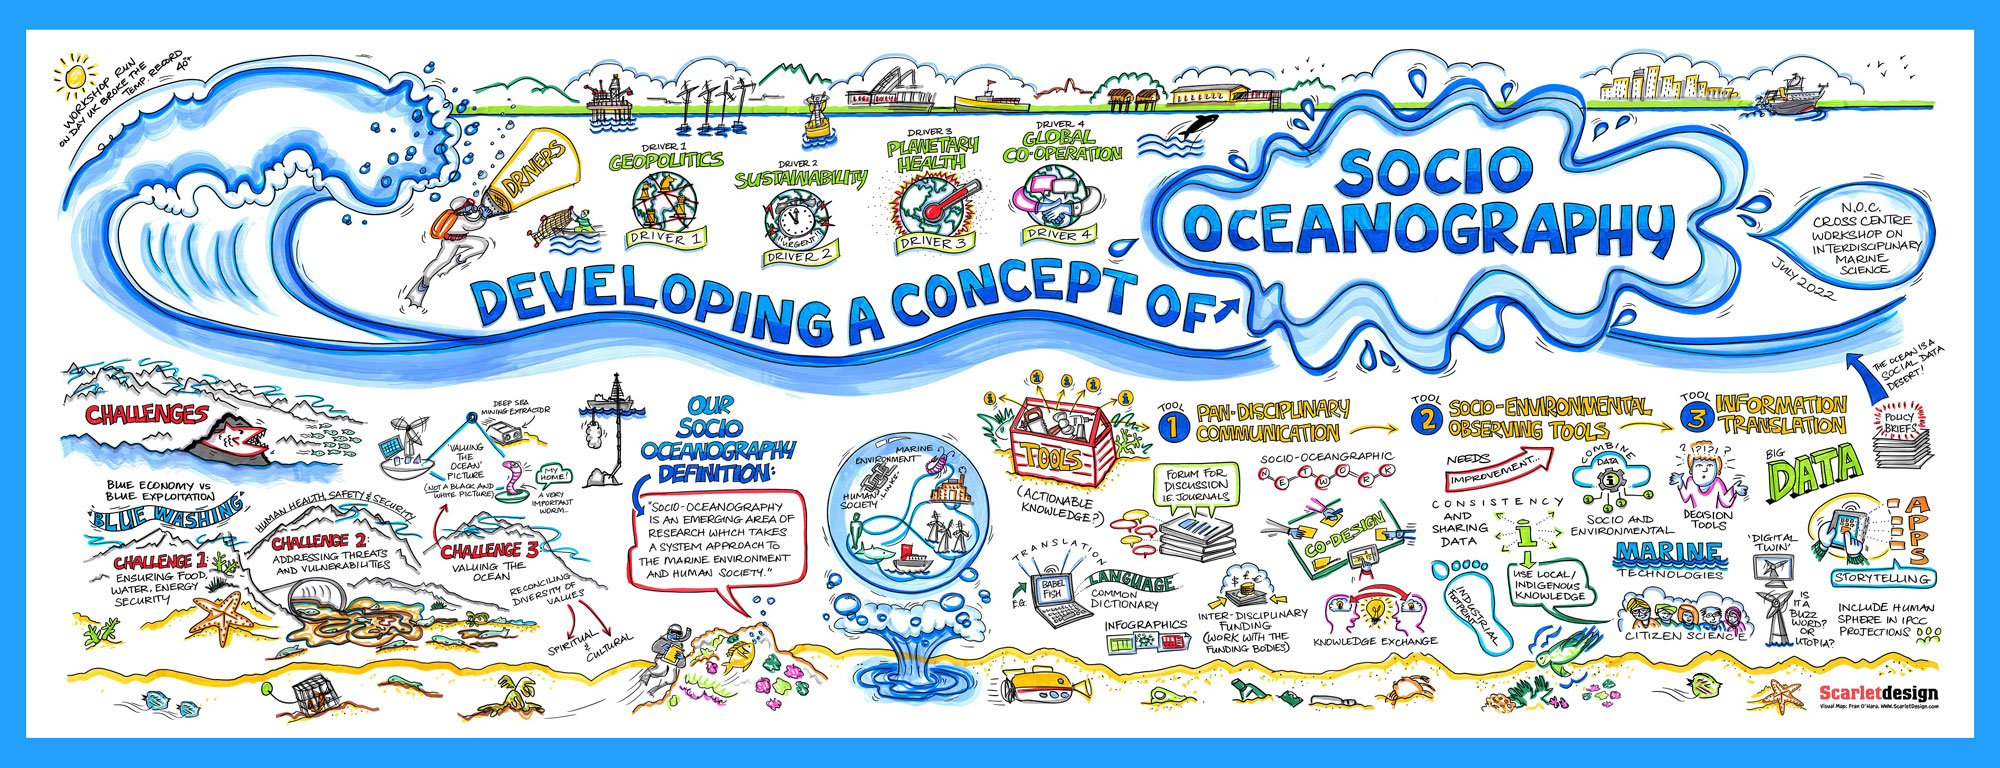 Developing a concept of socio-oceanography